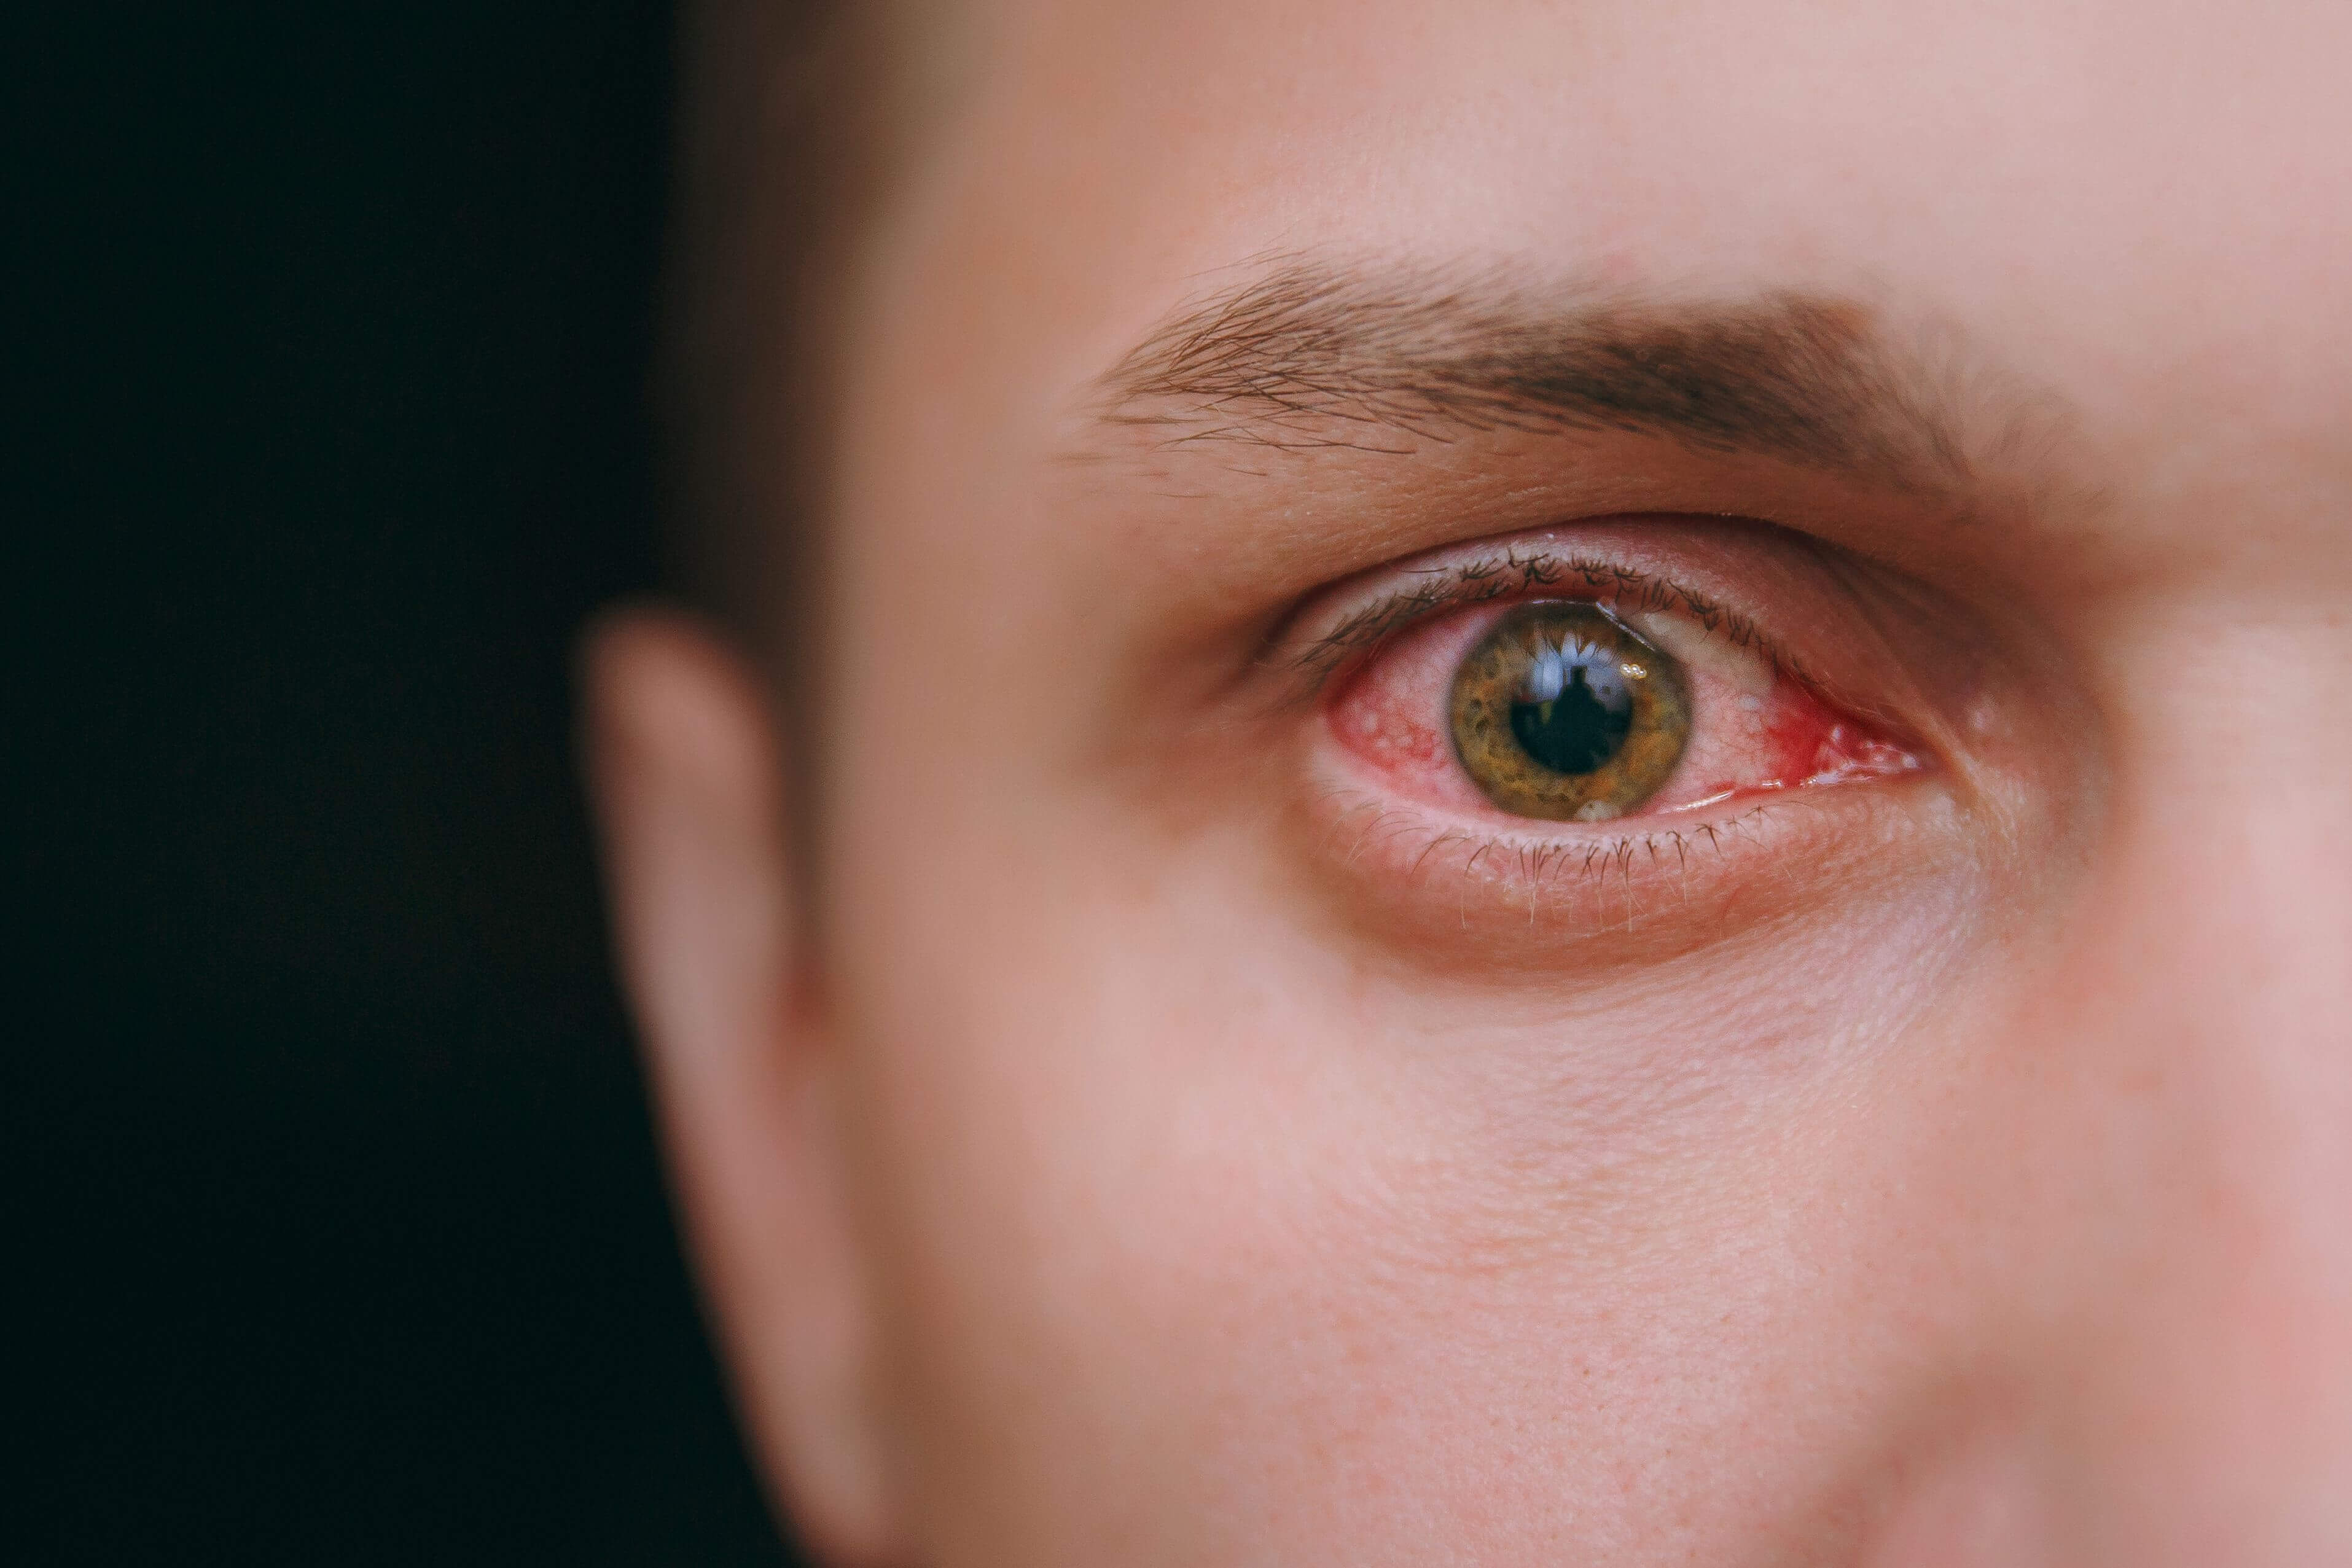 imagen estilizada de una persona con ojos rojos